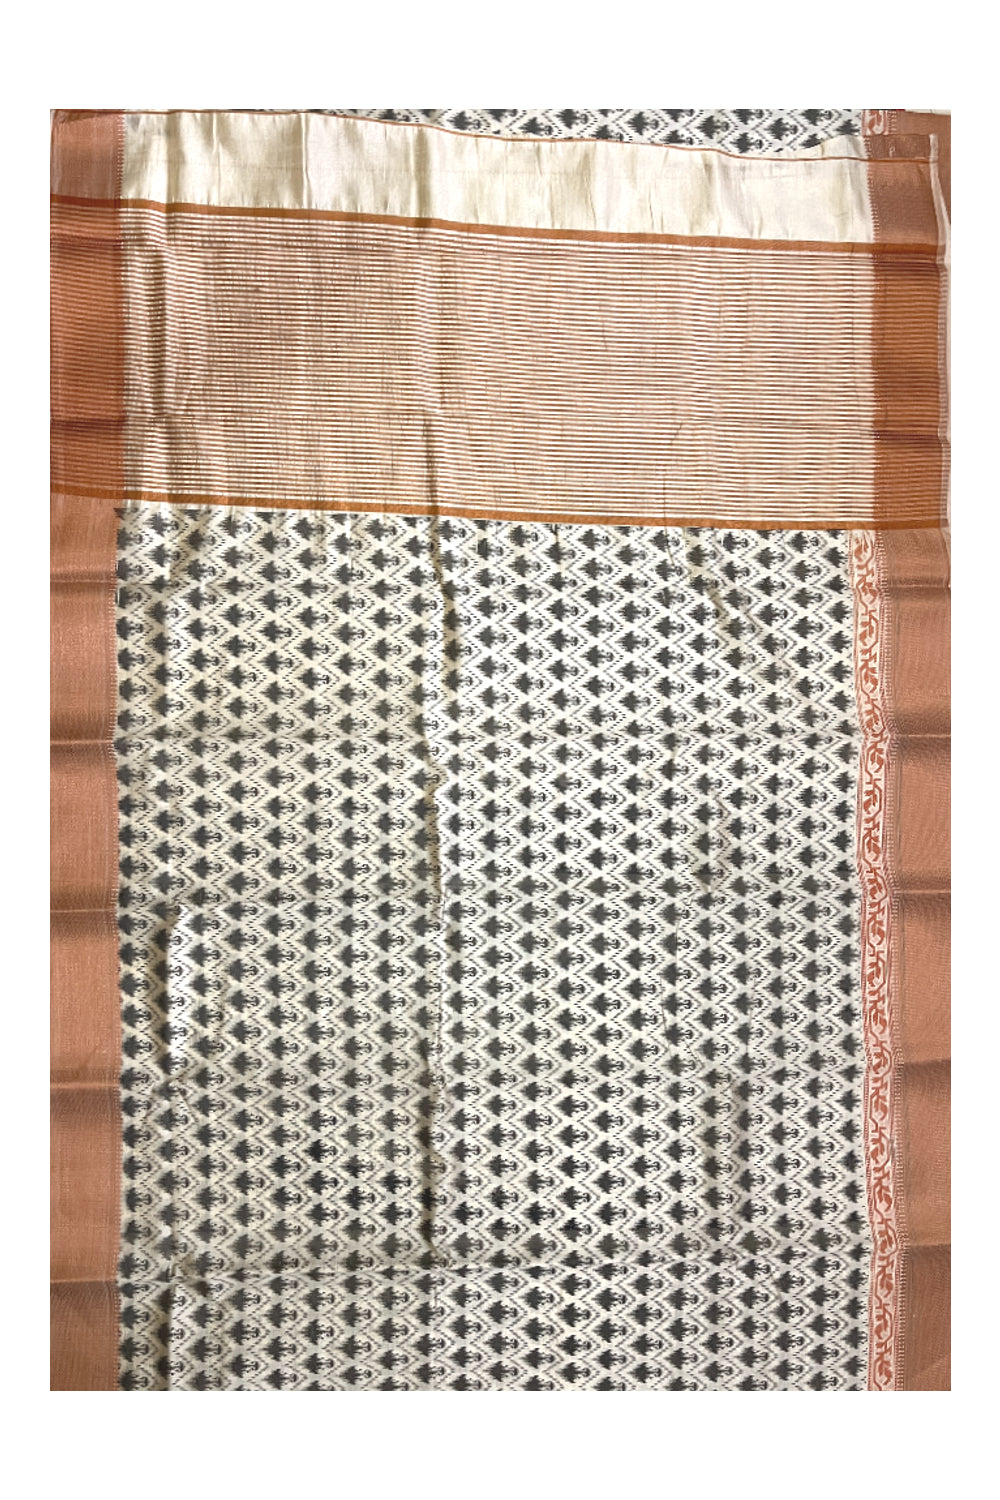 Southloom Semi Silk White Designer Printed Saree with Copper Border